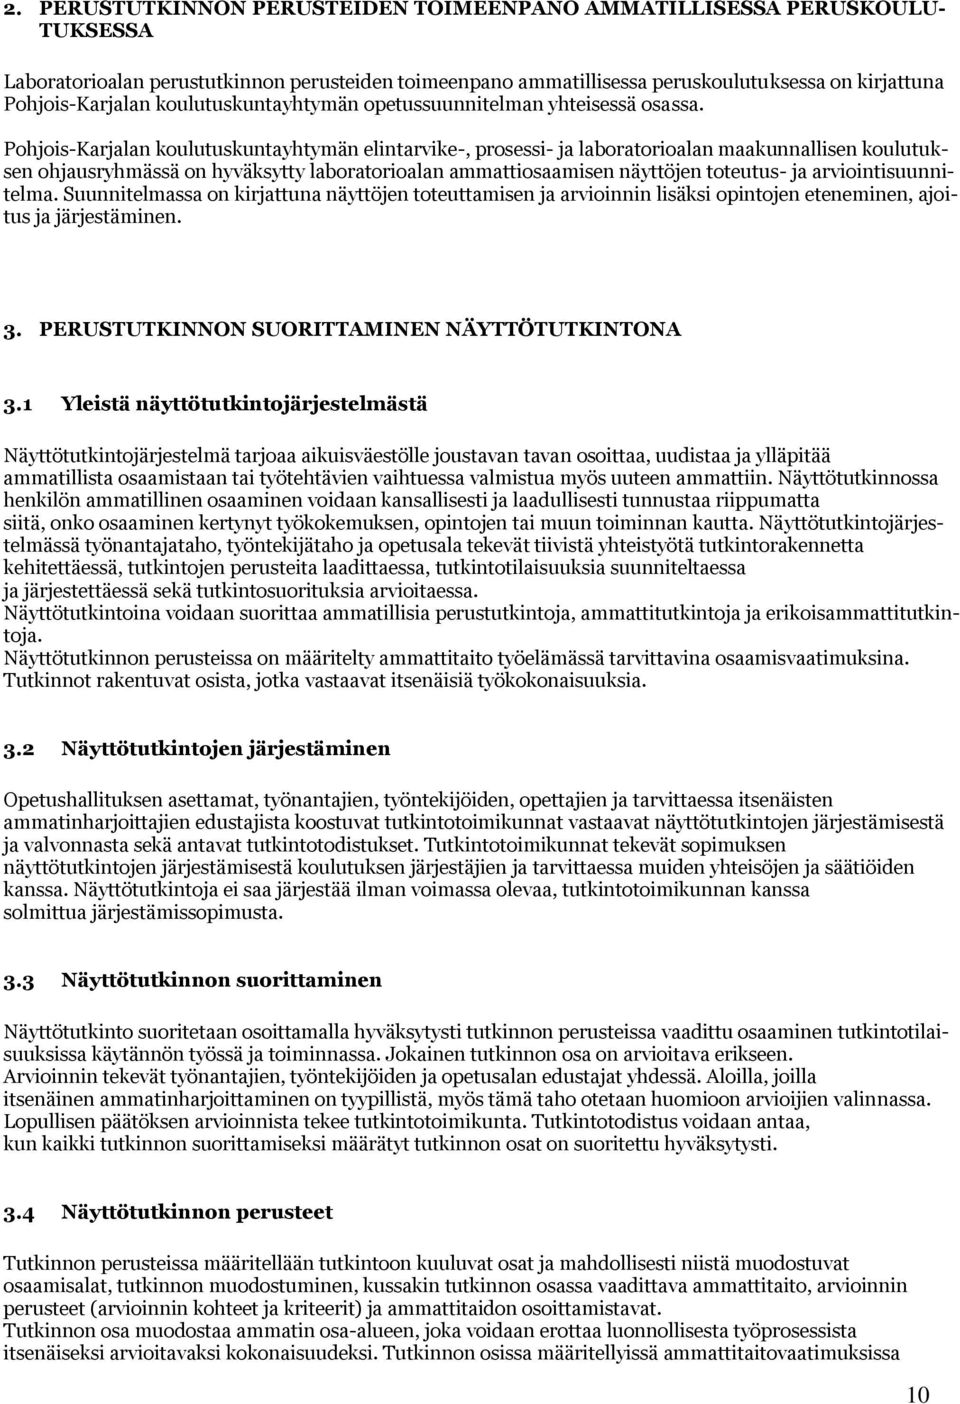 Pohjois-Karjalan koulutuskuntayhtymän elintarvike-, prosessi- ja laboratorioalan maakunnallisen koulutuksen ohjausryhmässä on hyväksytty laboratorioalan ammattiosaamisen näyttöjen toteutus- ja